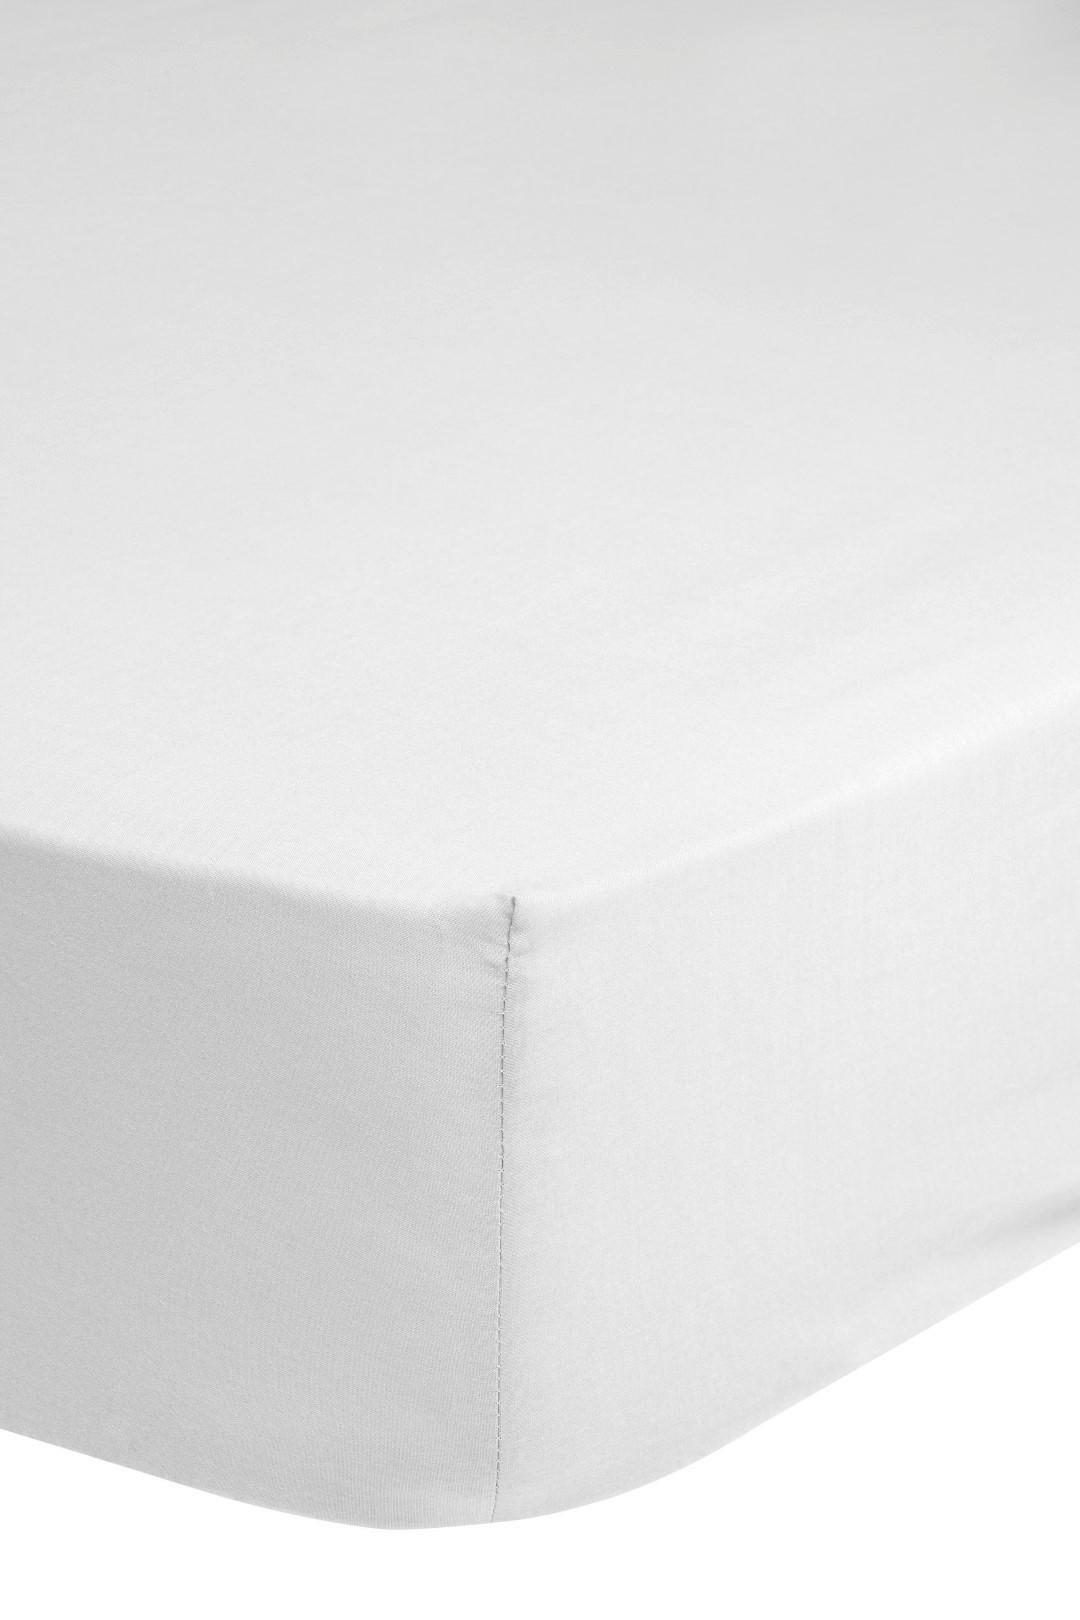 Elastické Prostěradlo Jersey Z Bavlny 140x200cm - bílá, Basics, textil (140/200cm) - MID.YOU